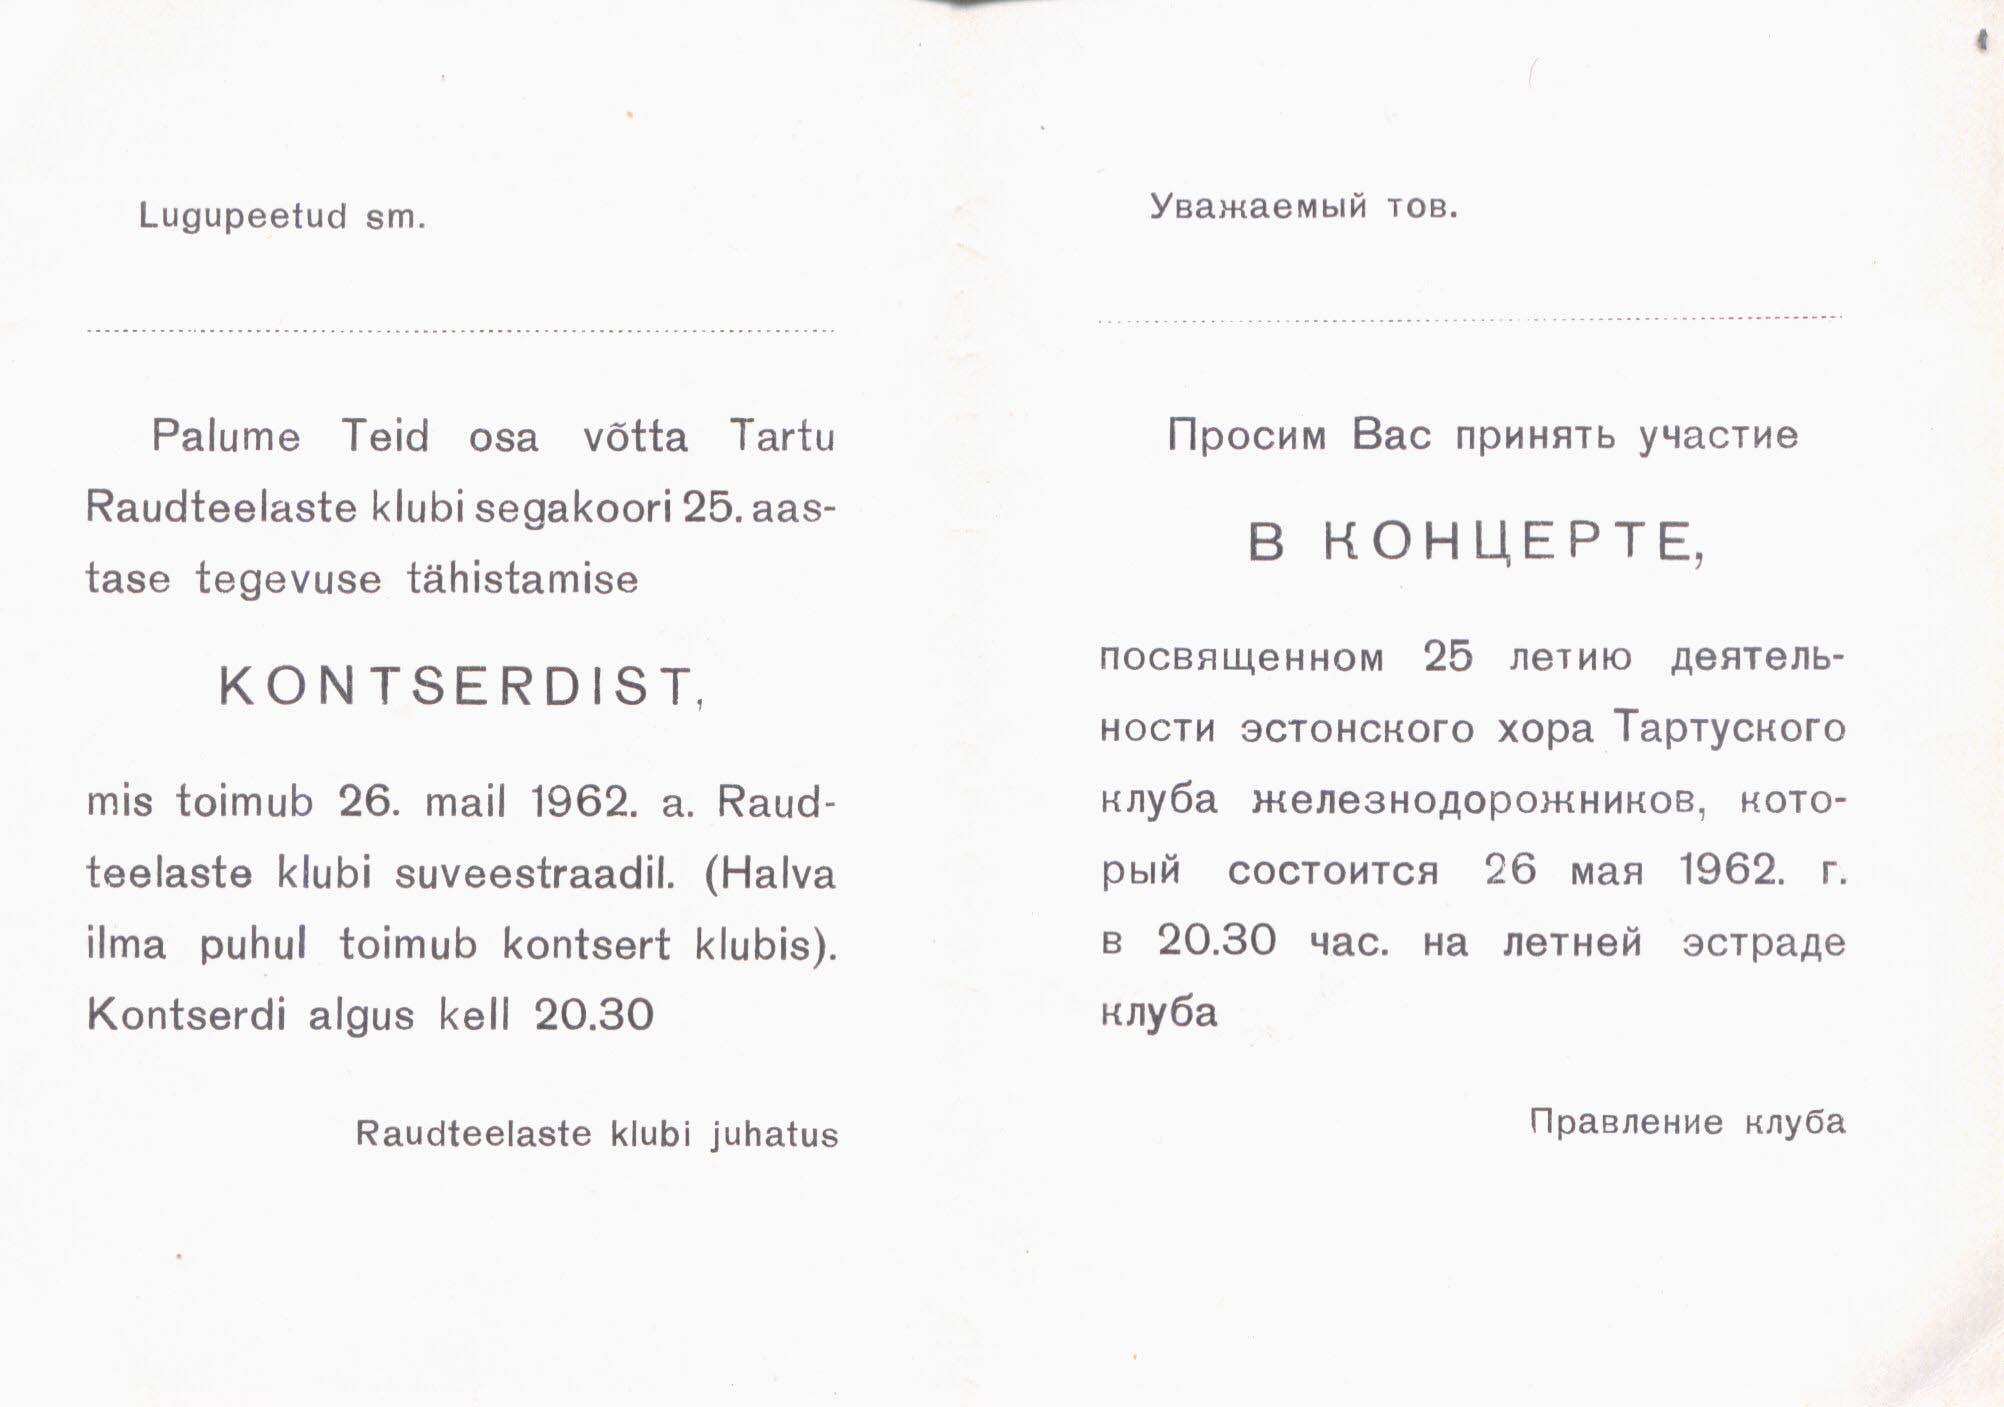 Tartu raudteelaste klubi tegevus. Kutse segakoori 25. aastase tegevuse tähistamise kontserdile. 1962